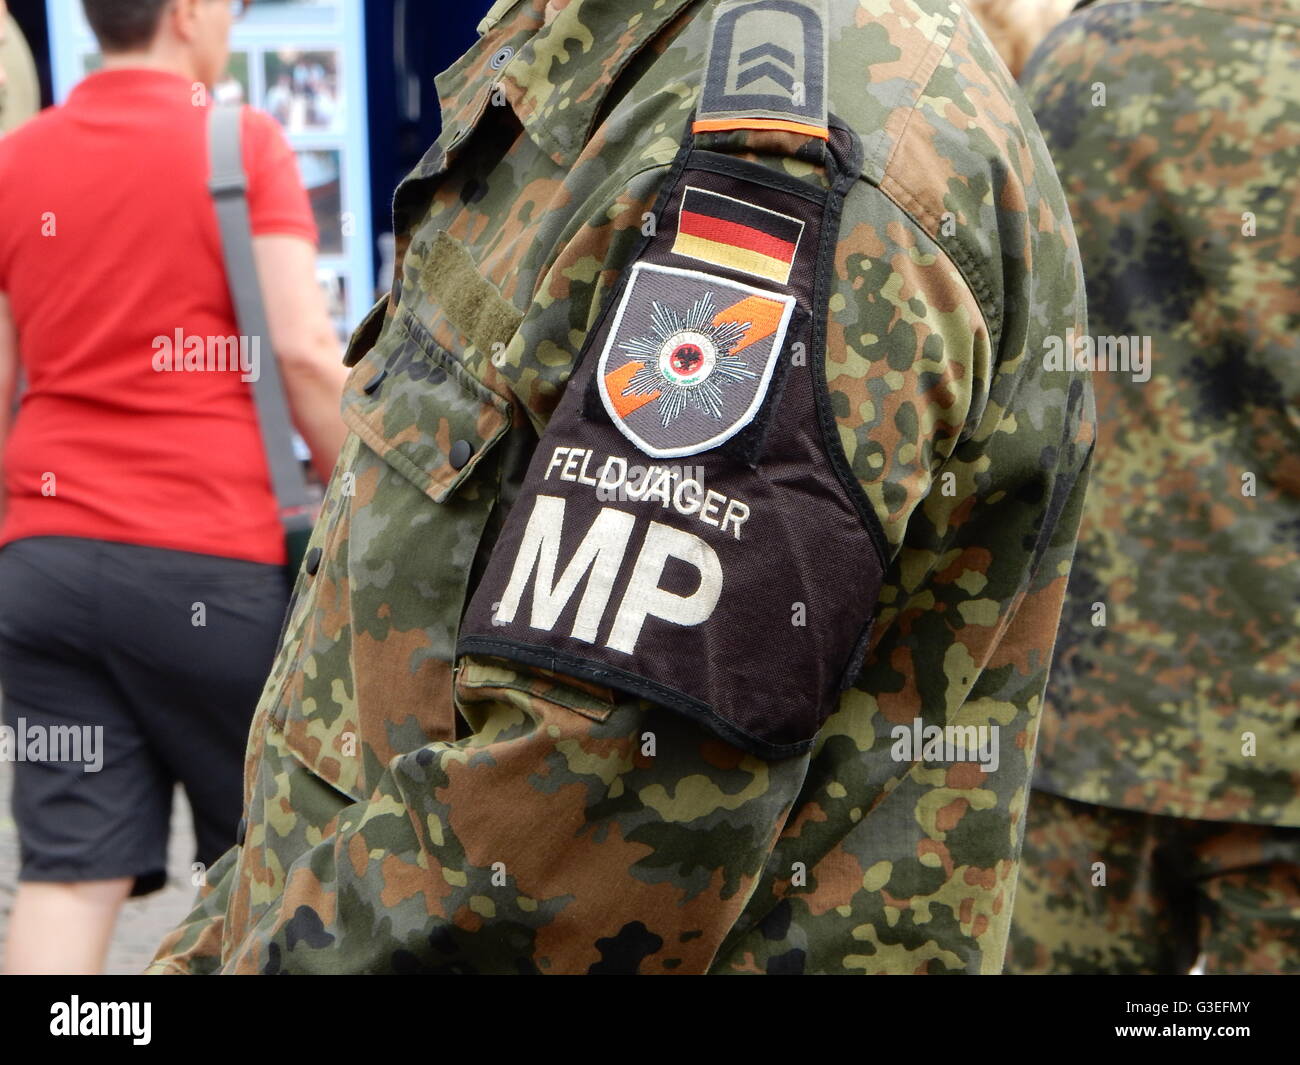 German Military Police Ww2